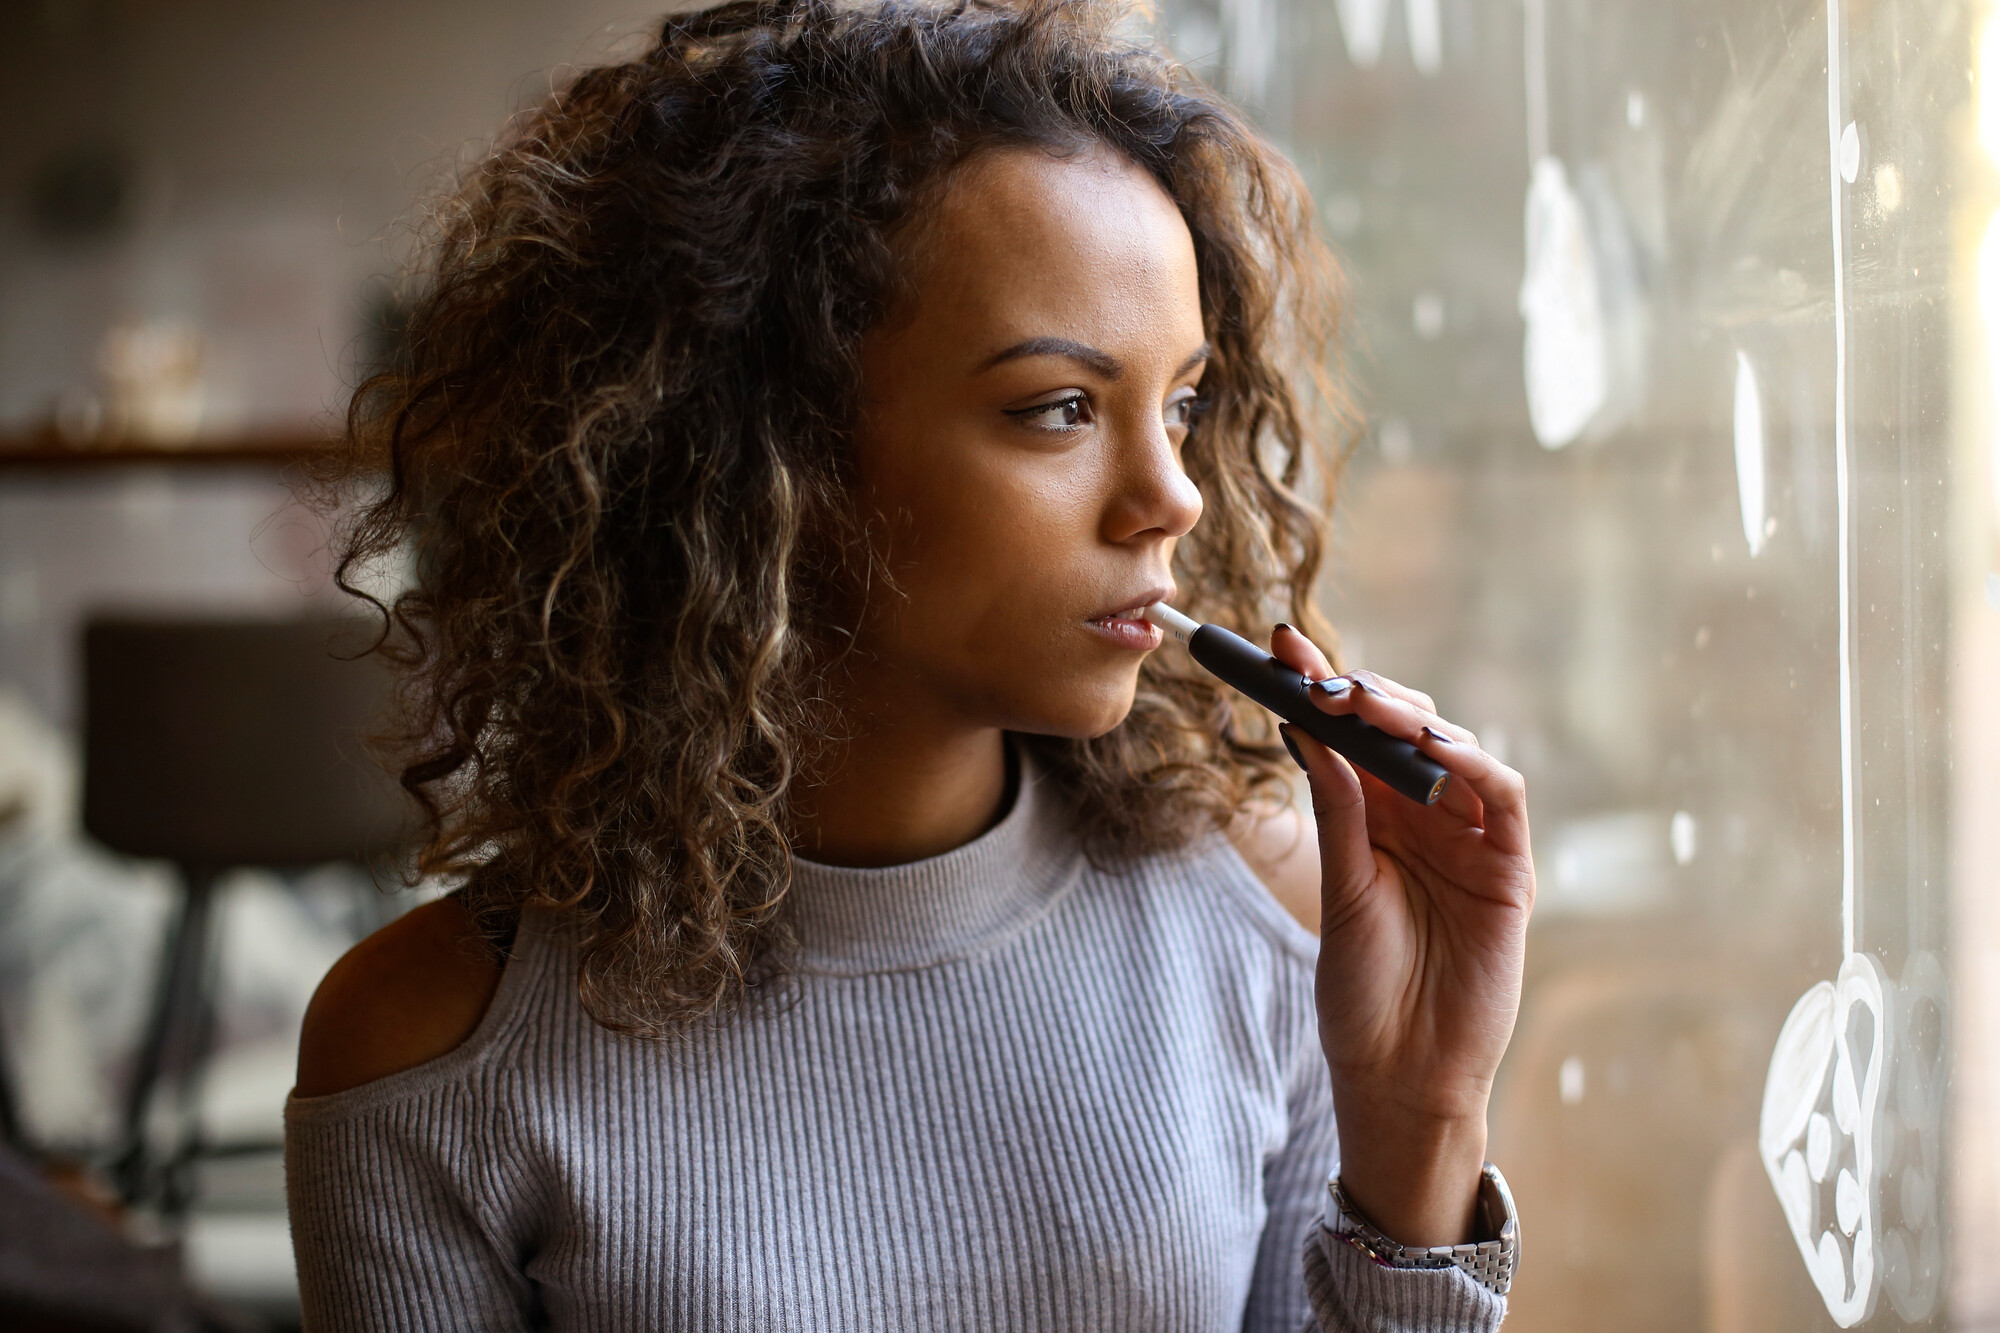 Viele Menschen nutzen E-Zigaretten als Hilfsmittel, um mit dem Rauchen aufzuhören. Cochrane hat untersucht, ob diese Strategie Sinn macht.